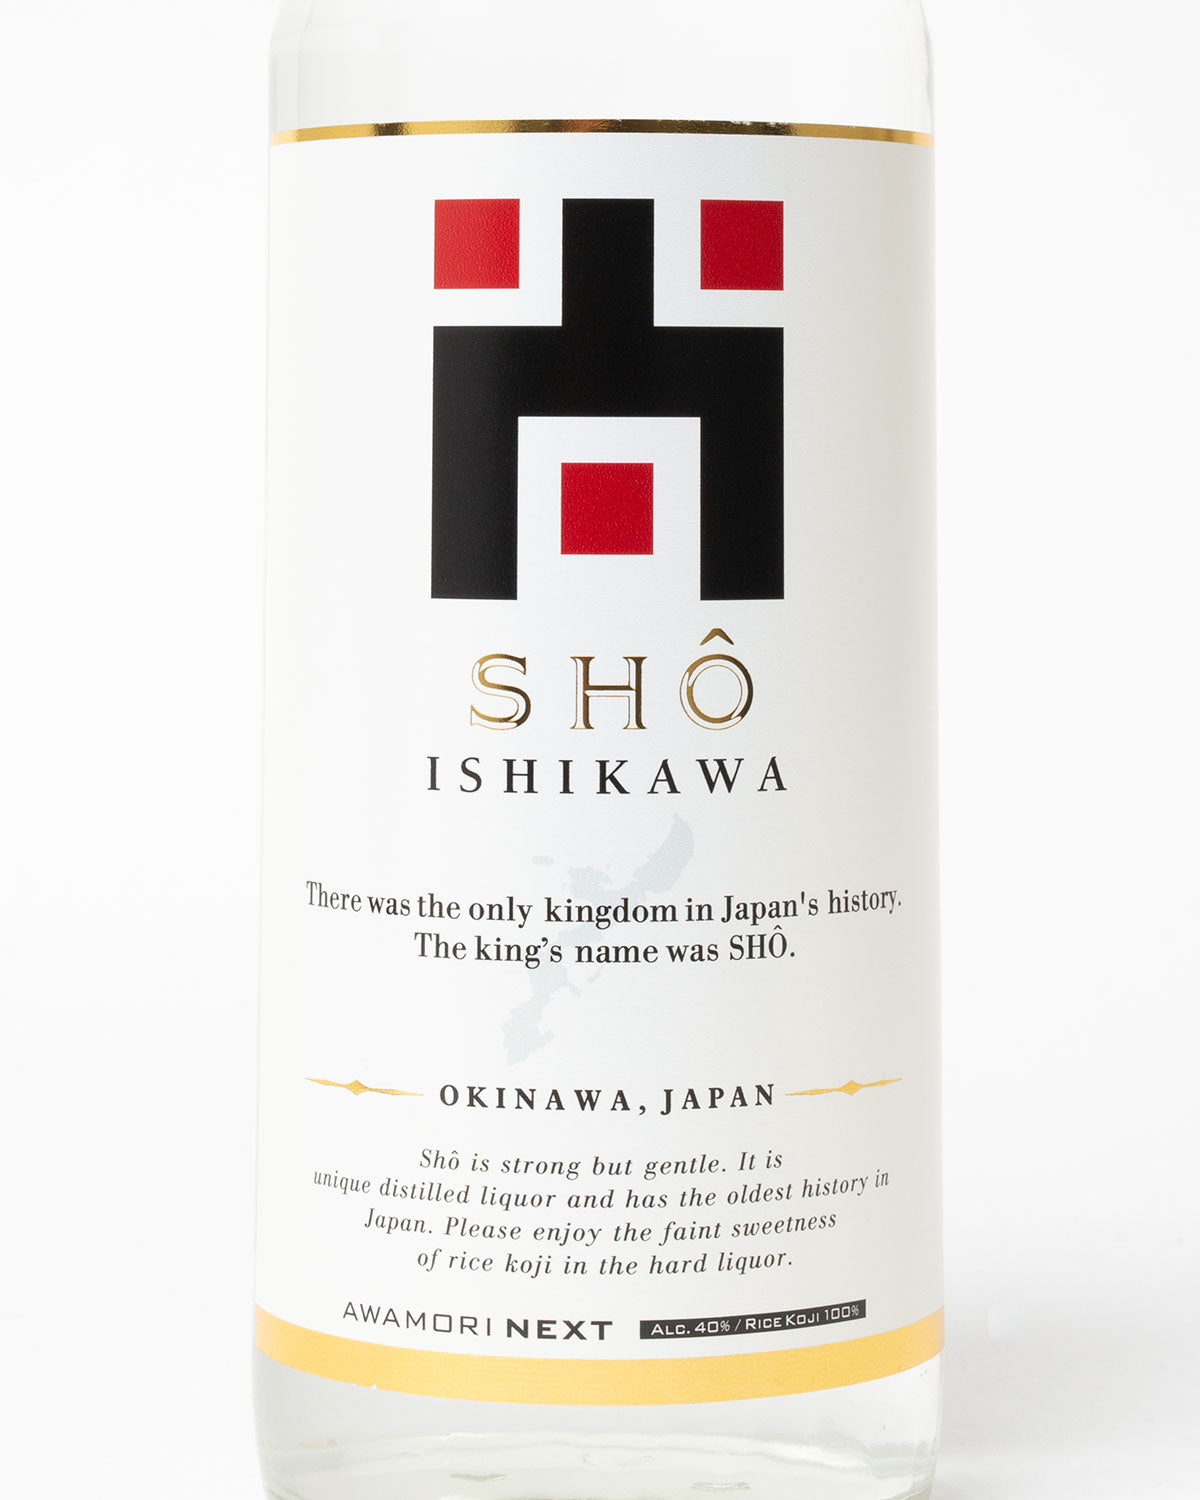 SHO ISHIKAWA 720ml